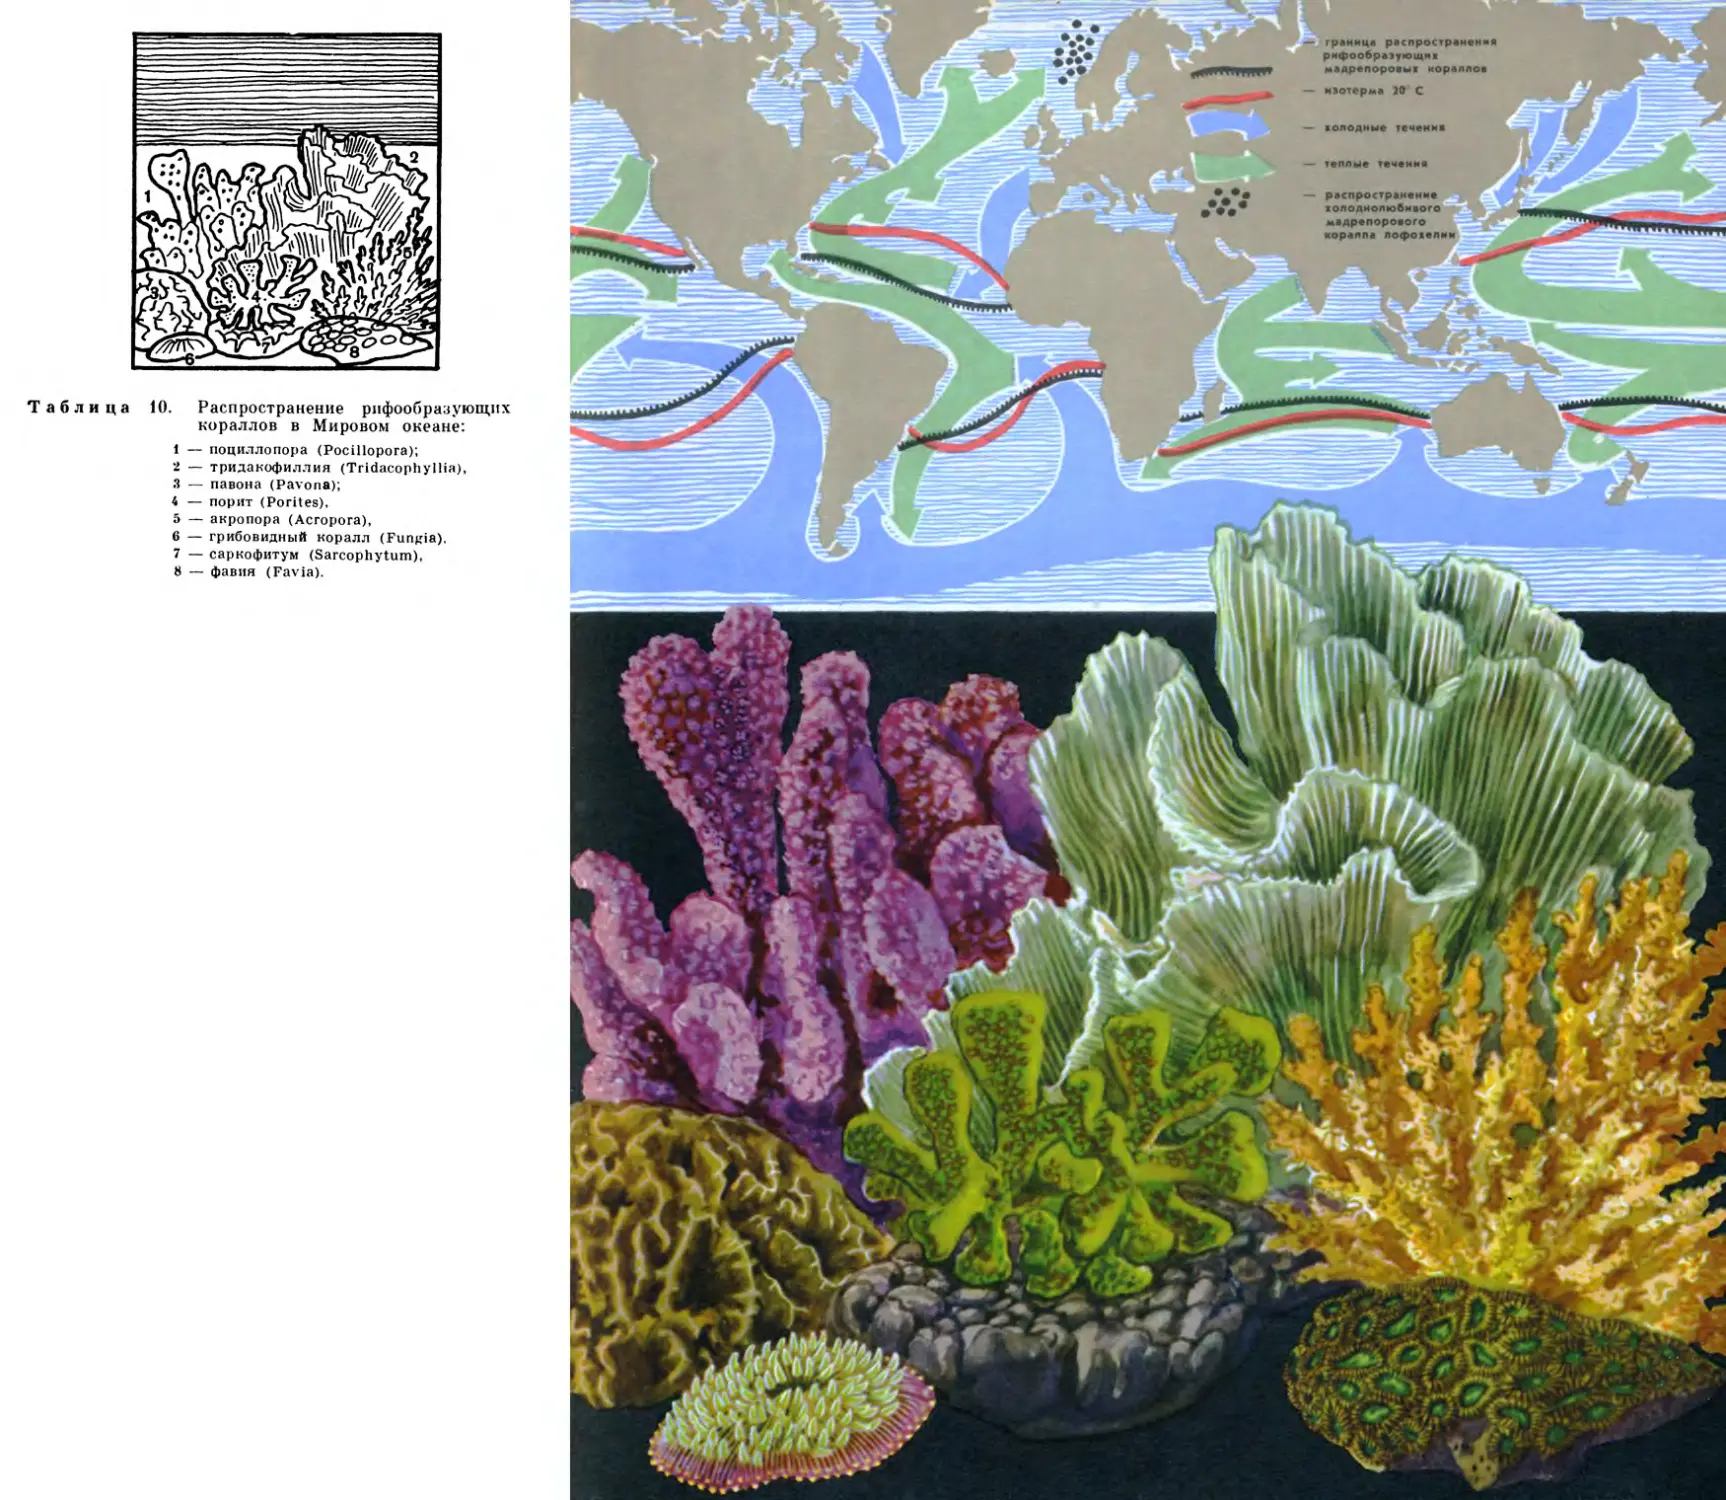 10. Распространение рифообразующнх кораллов в Мировом океане